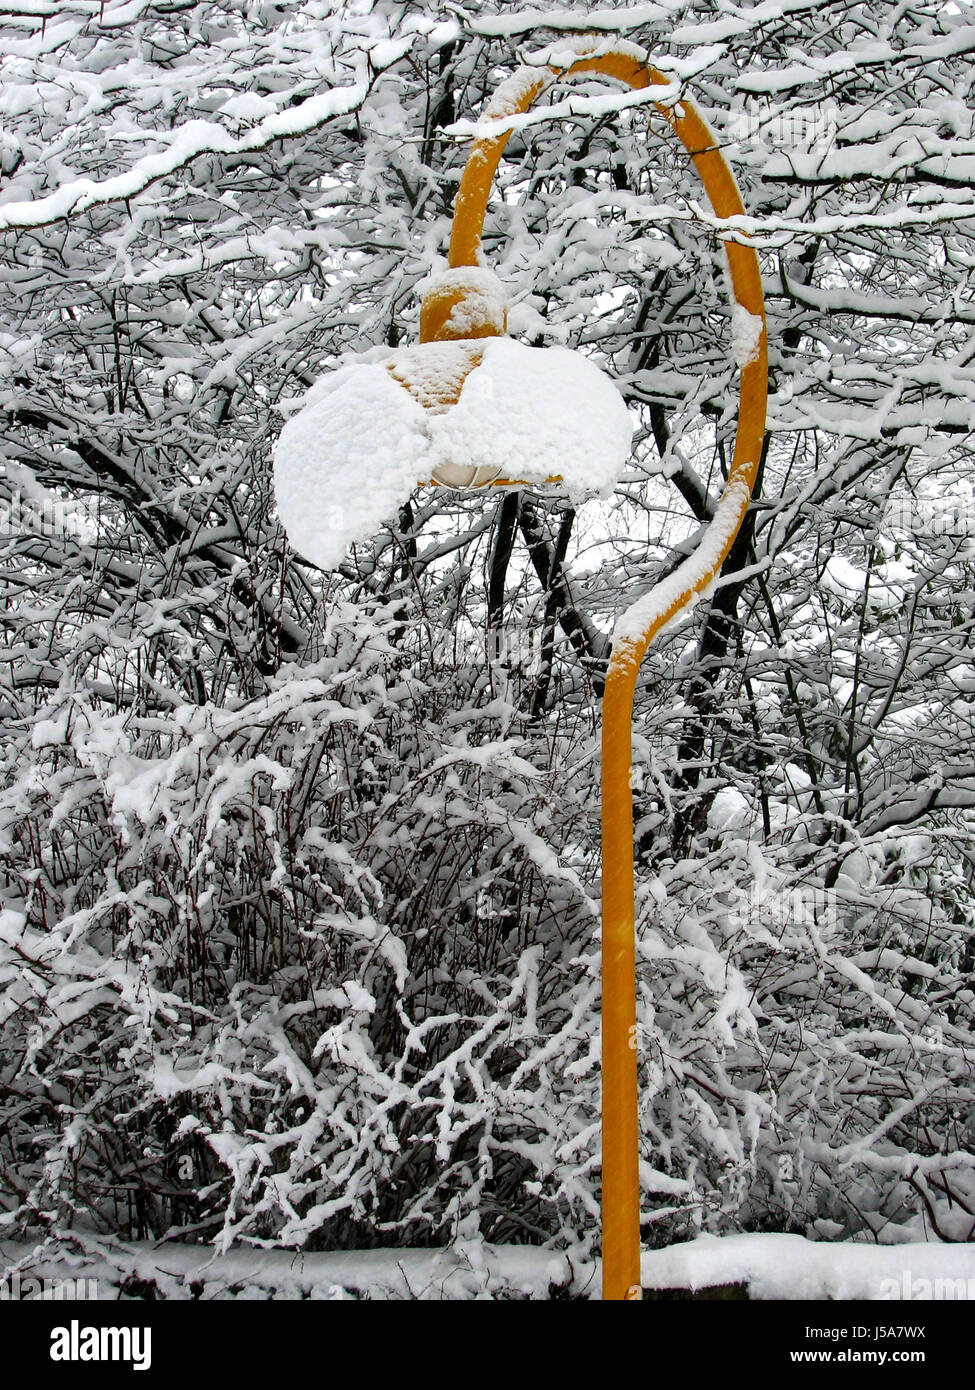 winter snowy branches shiner light lamp luminary yellow straenlampe schneehaube Stock Photo